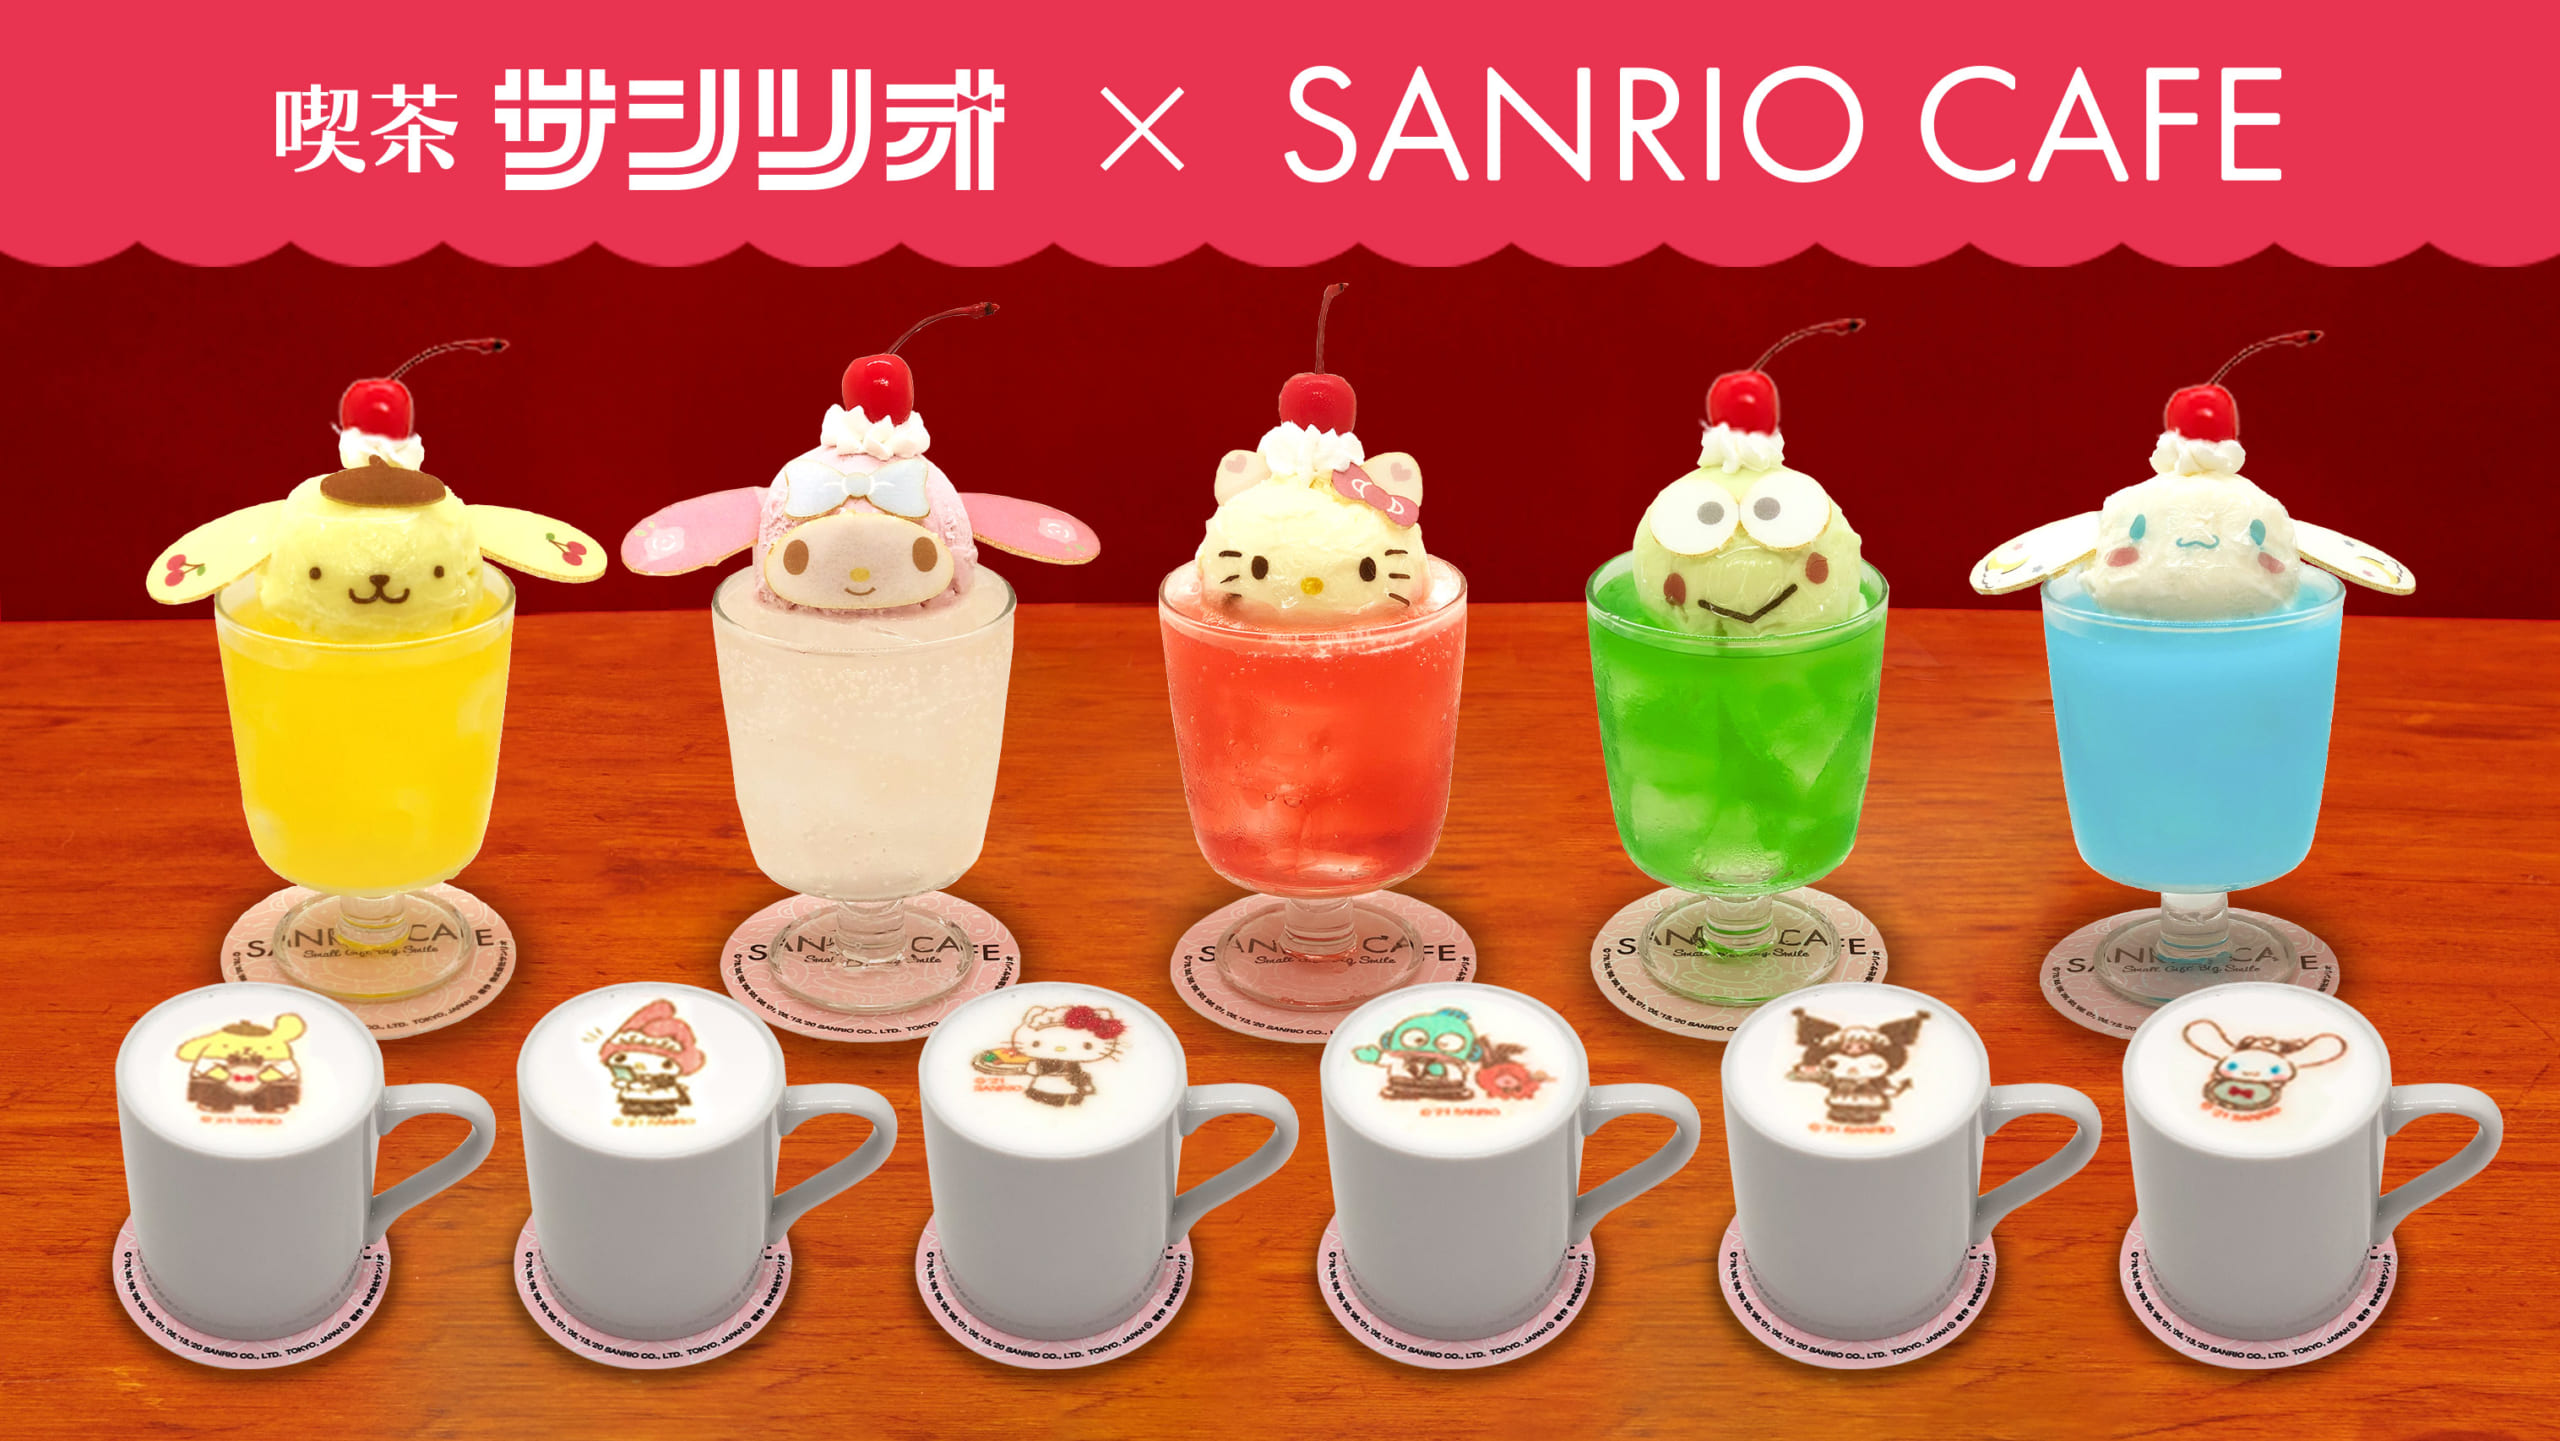 「喫茶サンリオデザインシリーズ」×「SANRIOCAFE池袋店」